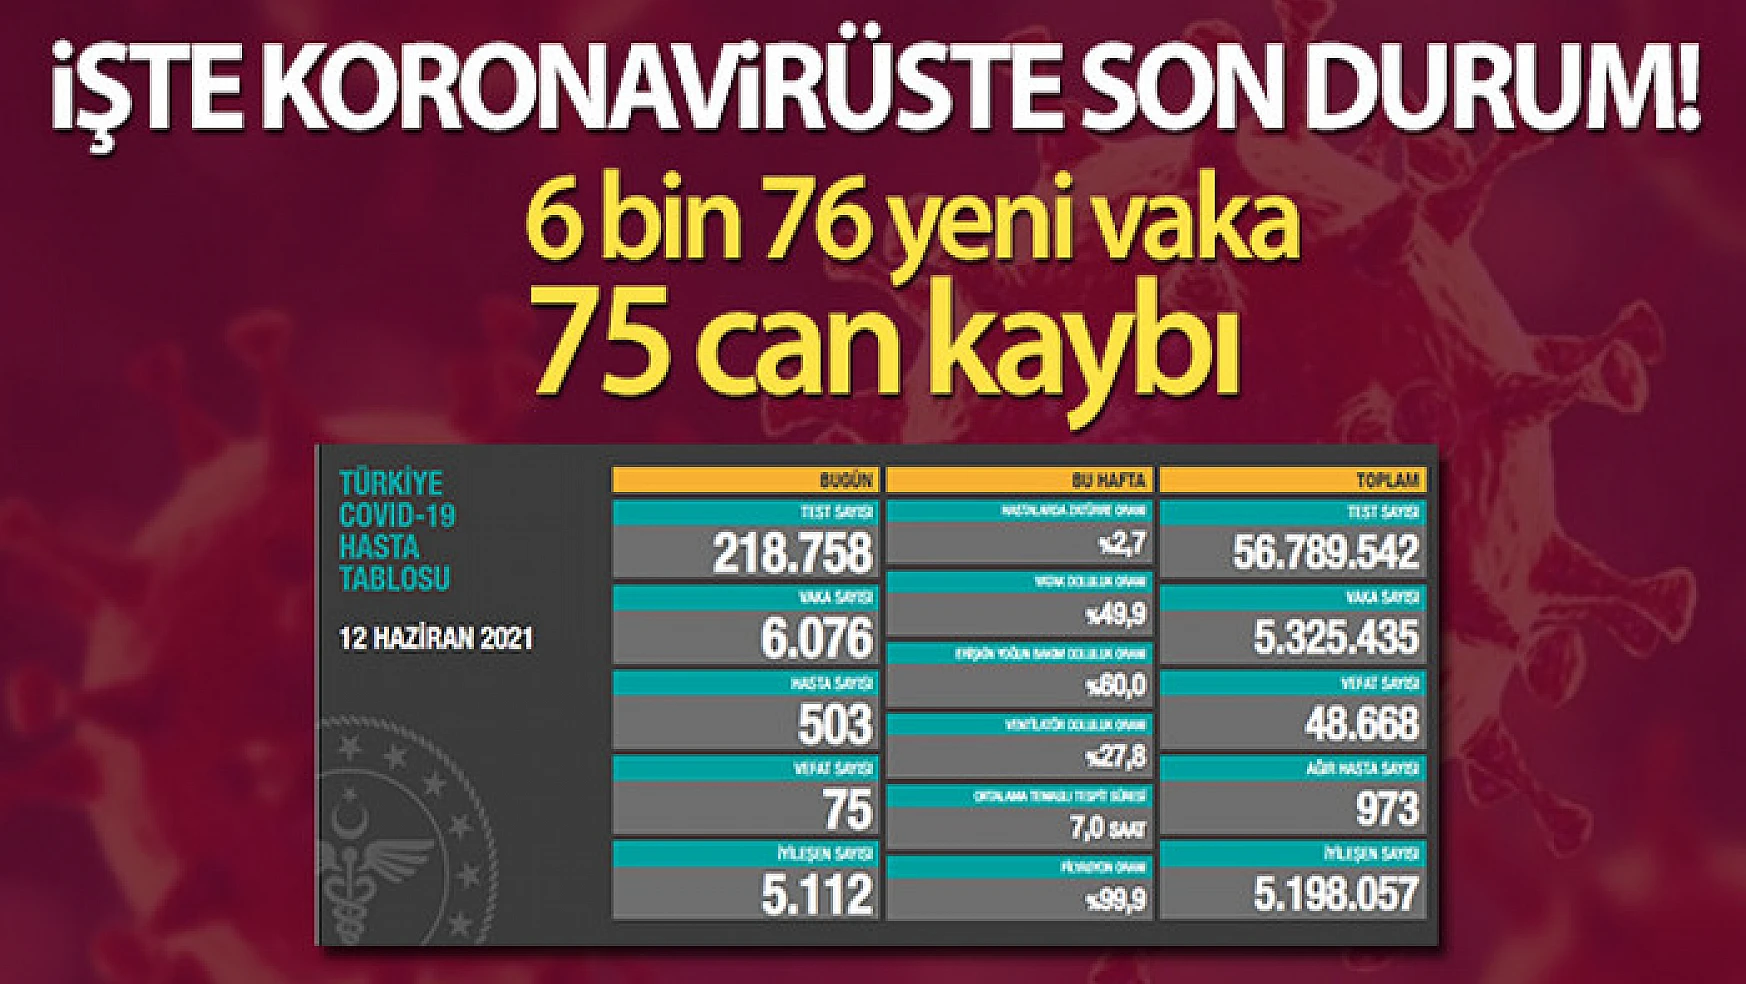 Türkiye'de son 24 saatte 6.076 koronavirüs vakası tespit edildi